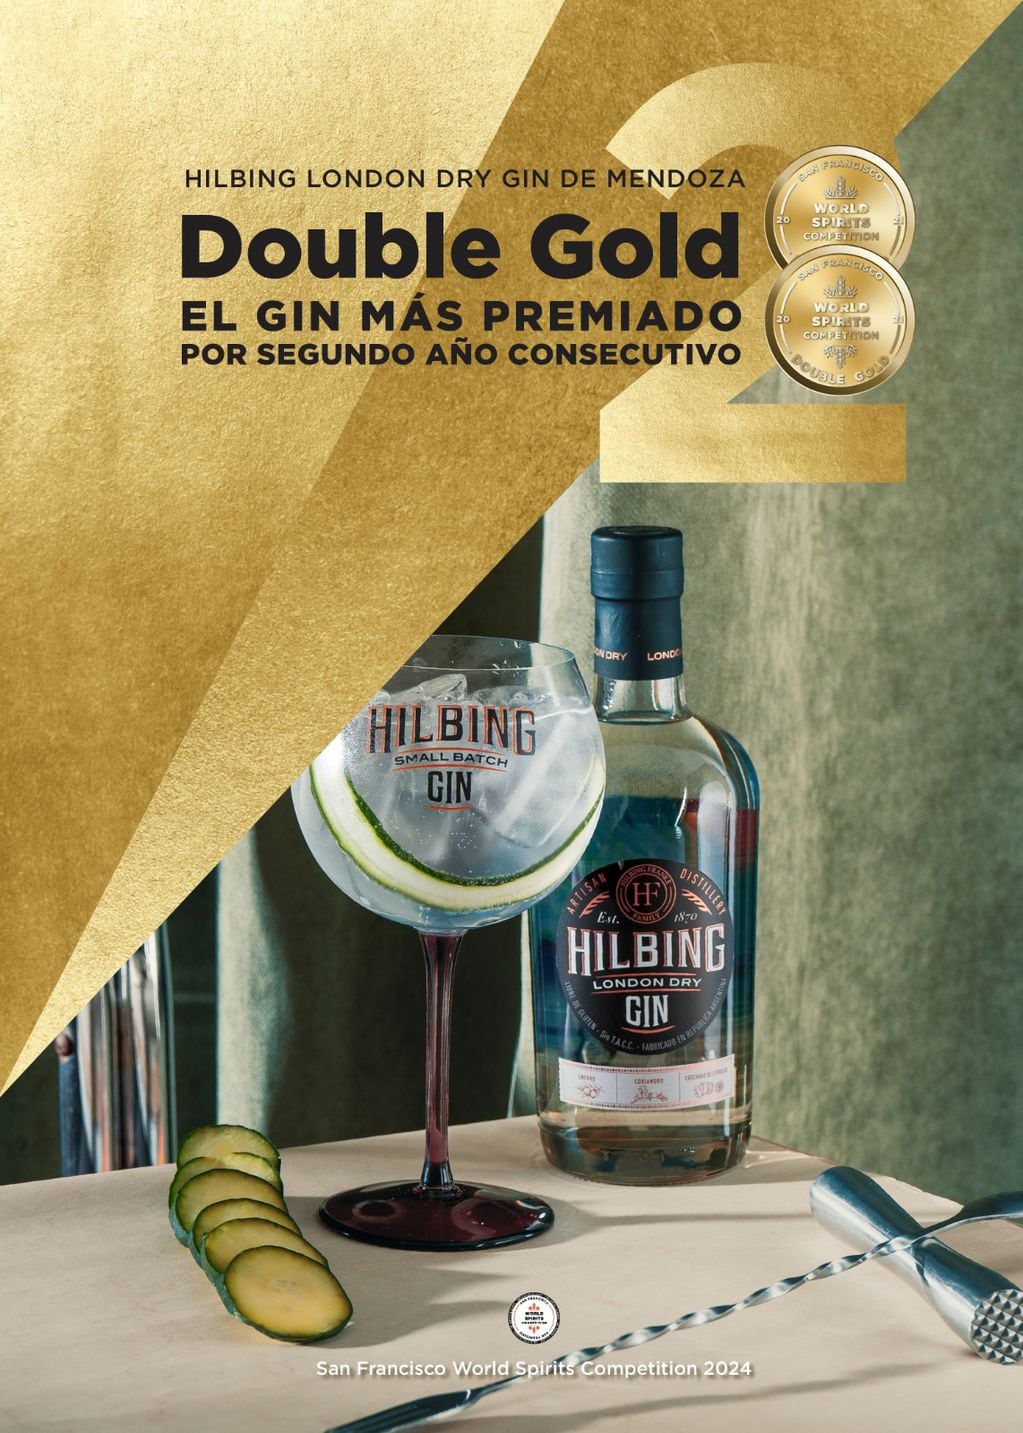 El gin Hilbing London Dry, fue elegido el mejor del mundo.